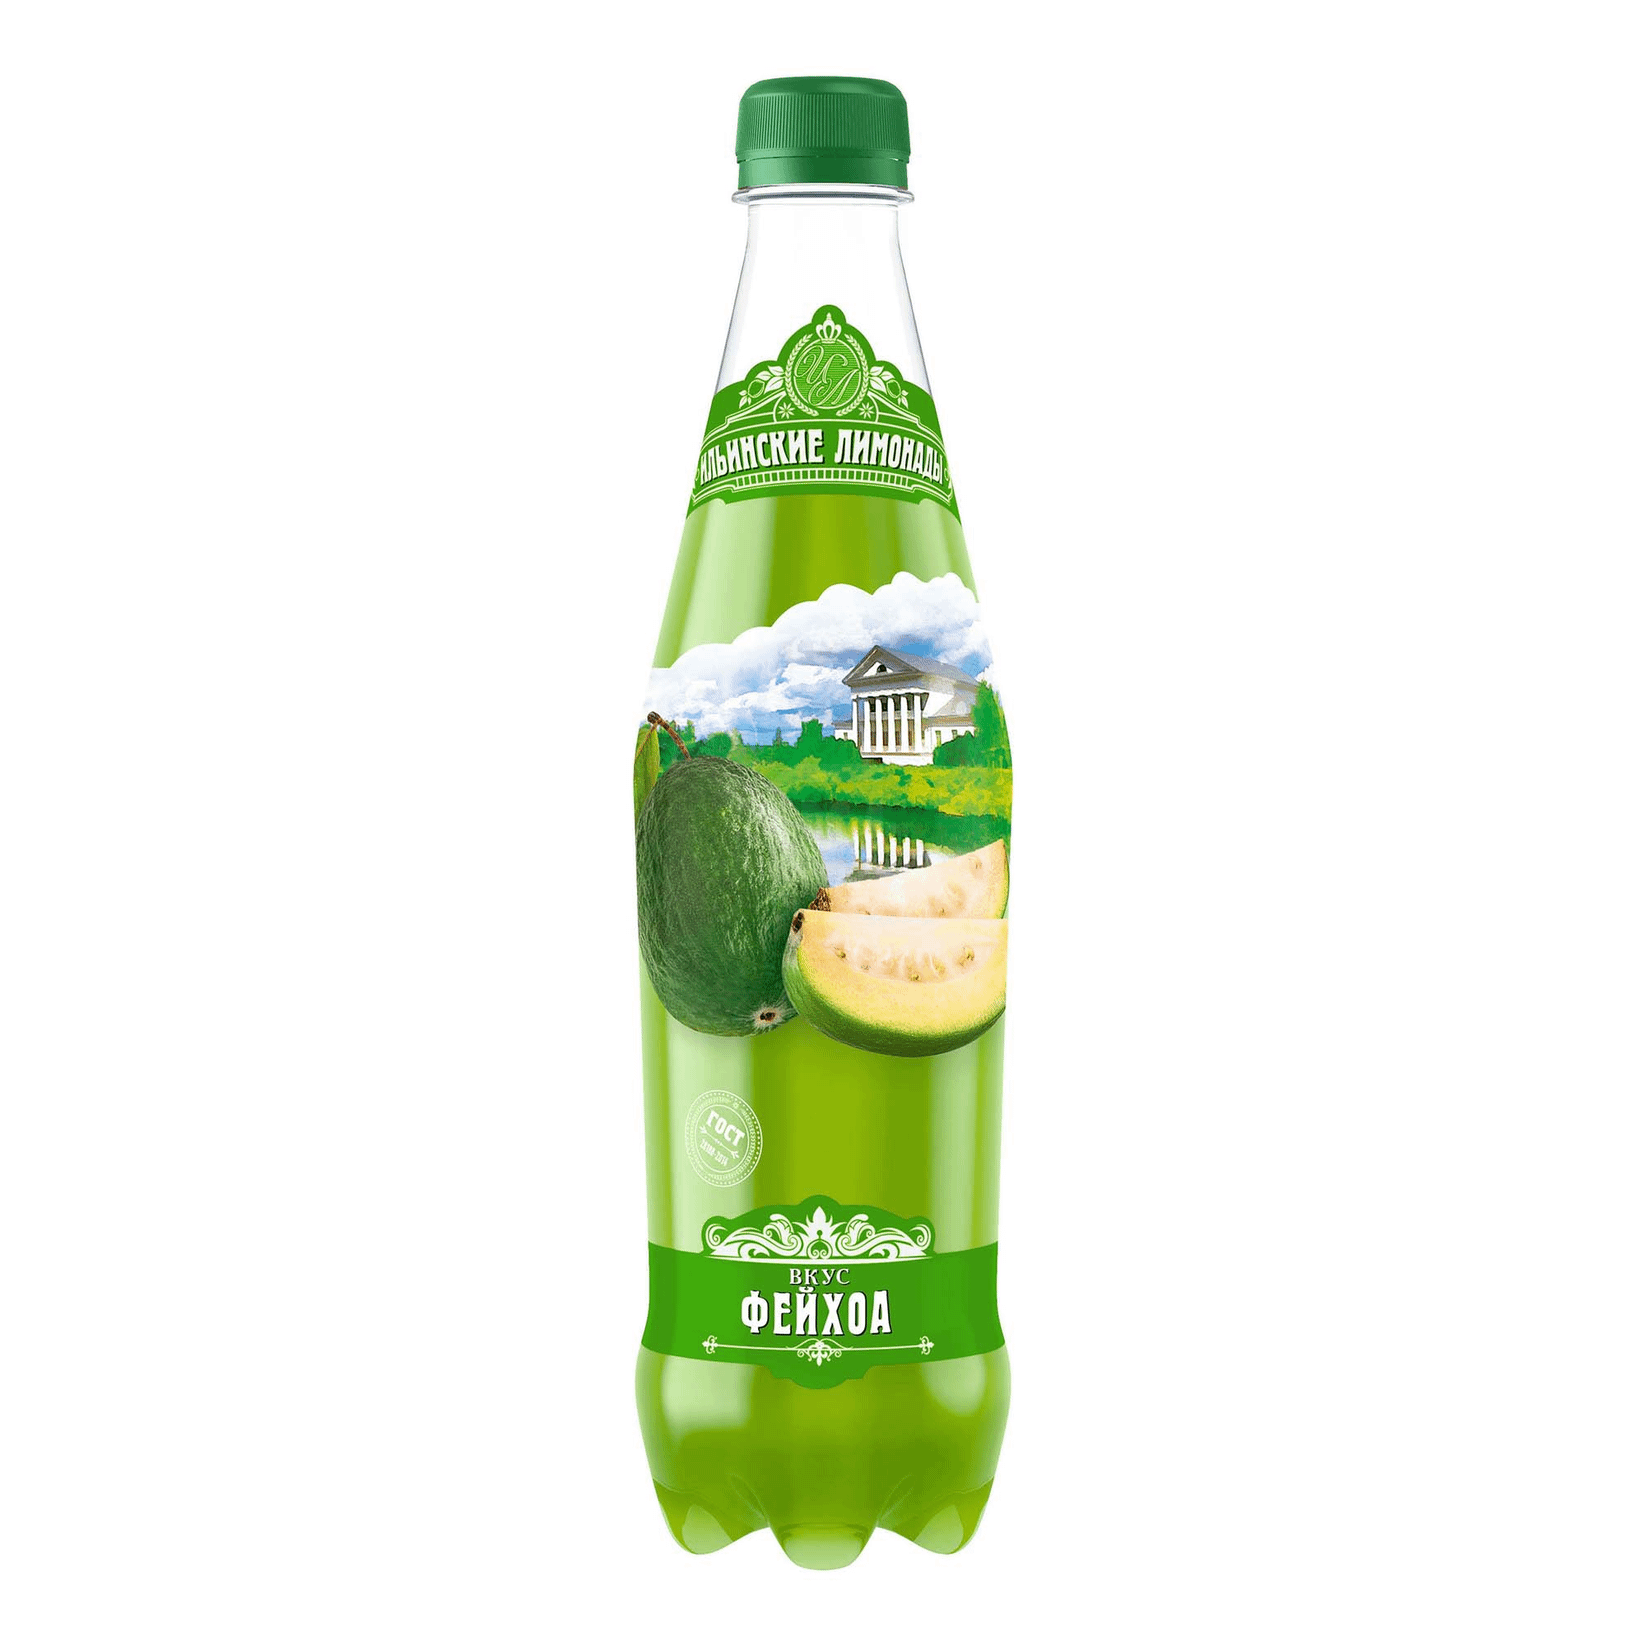 Газированный напиток Ильинские лимонады фейхоа 0,48 л